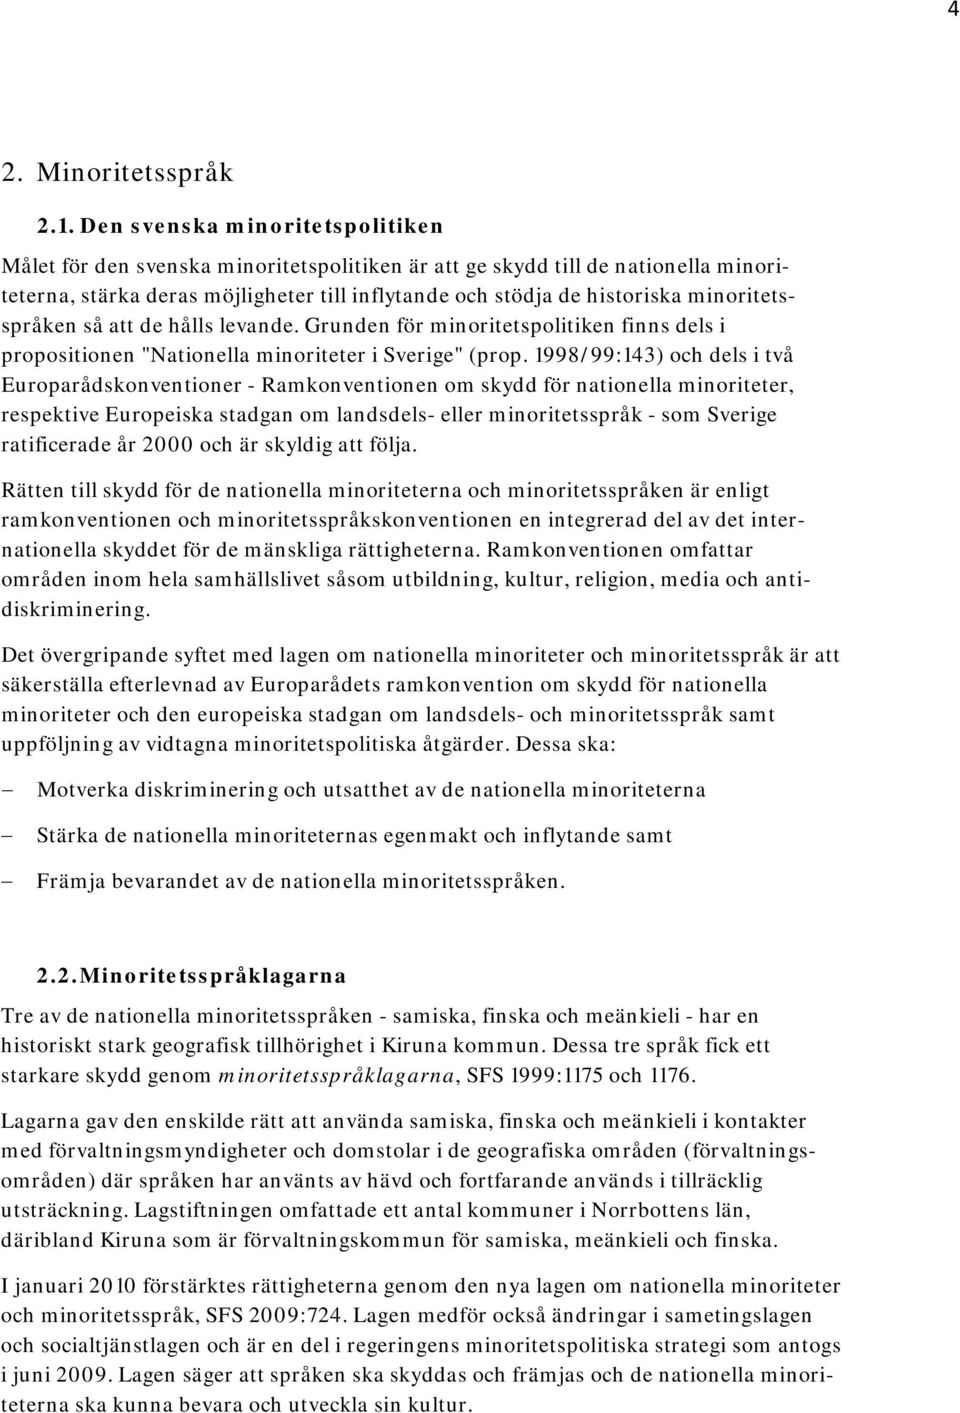 minoritetsspråken så att de hålls levande. Grunden för minoritetspolitiken finns dels i propositionen "Nationella minoriteter i Sverige" (prop.